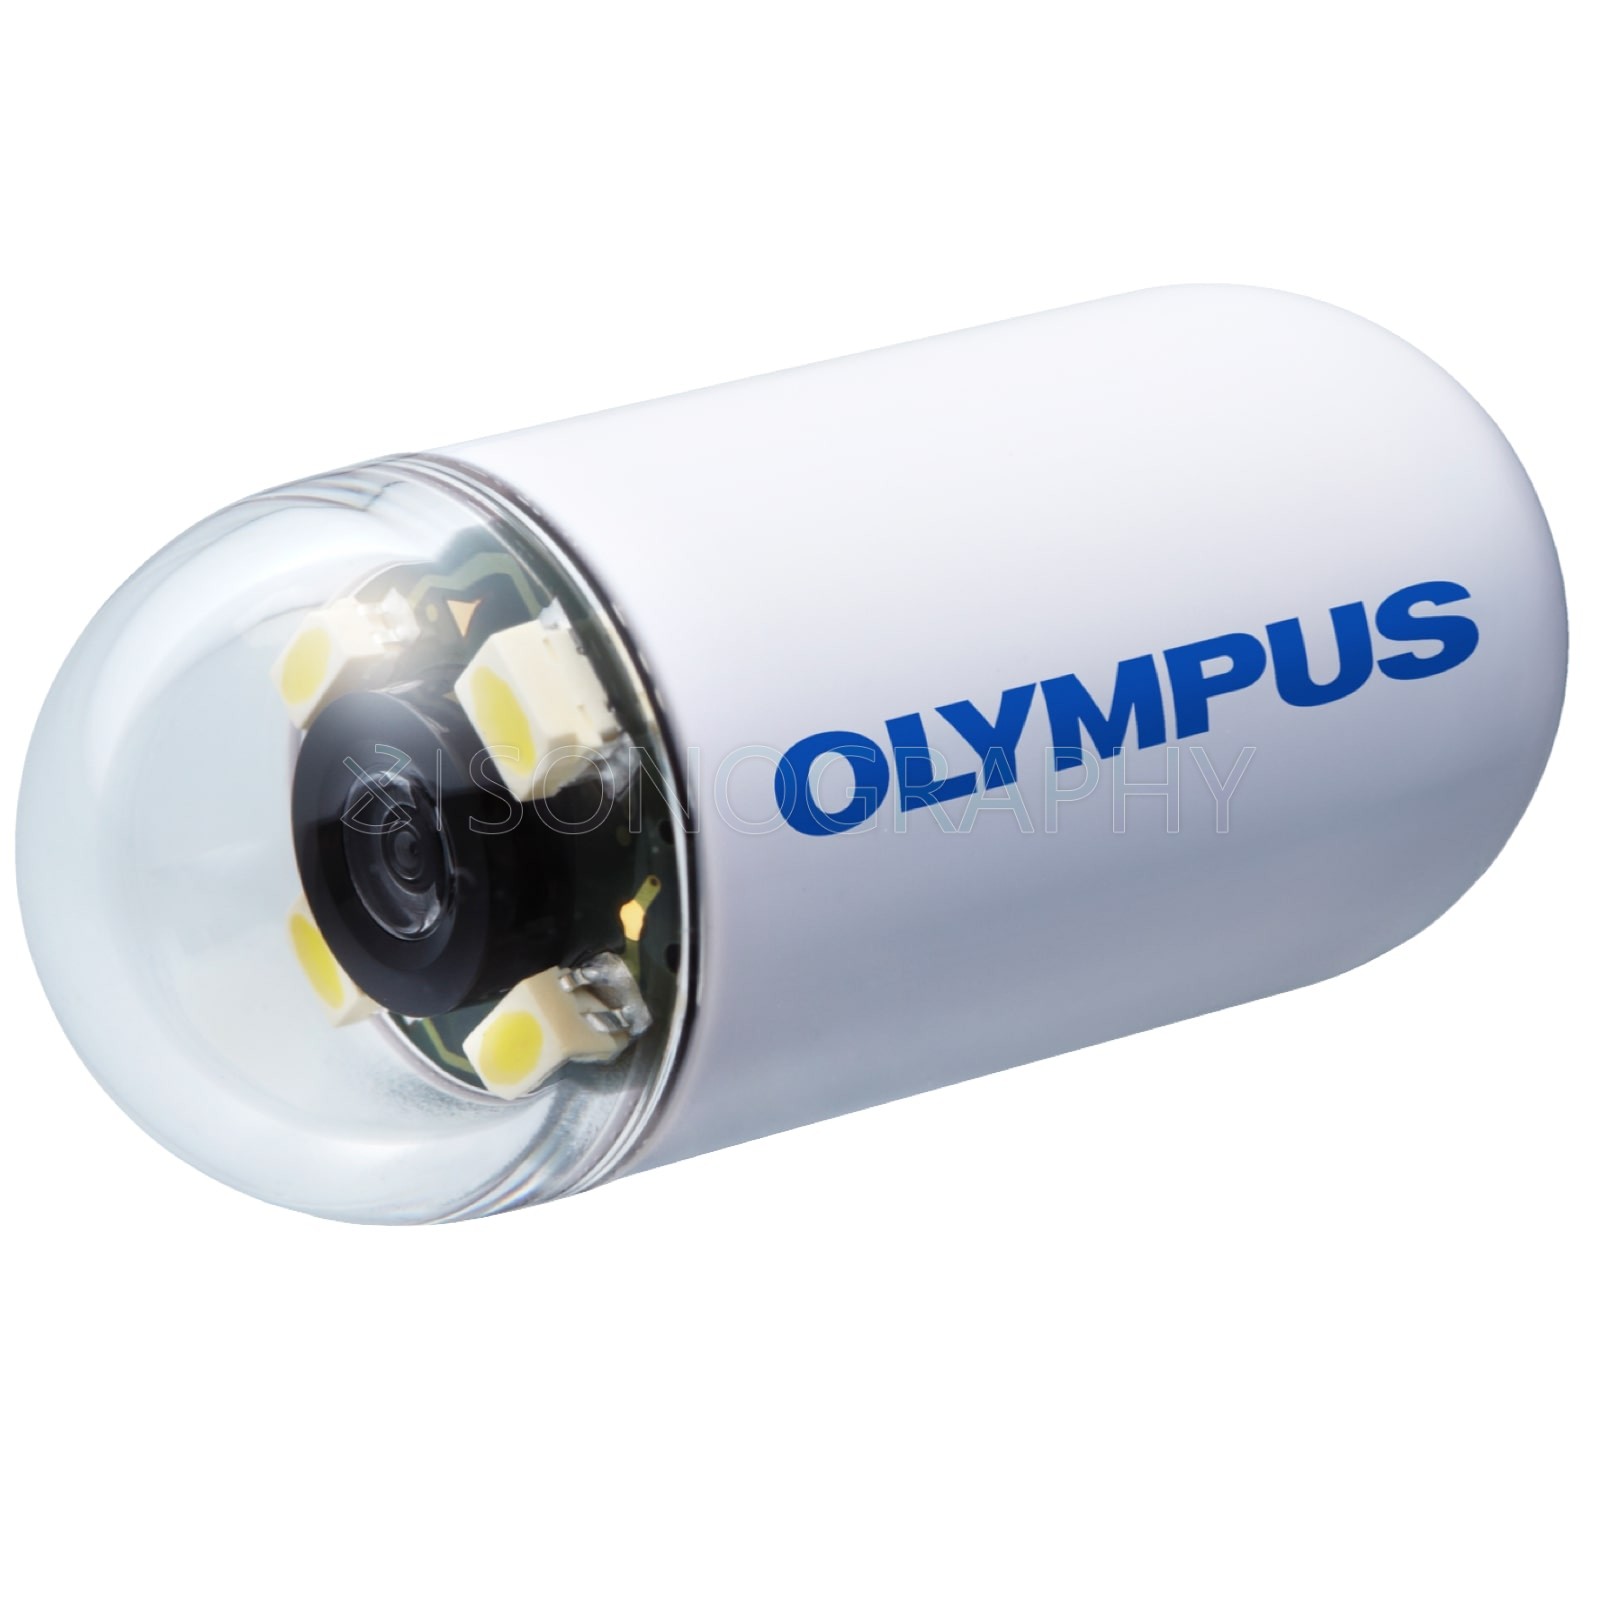 Olympus EC-10